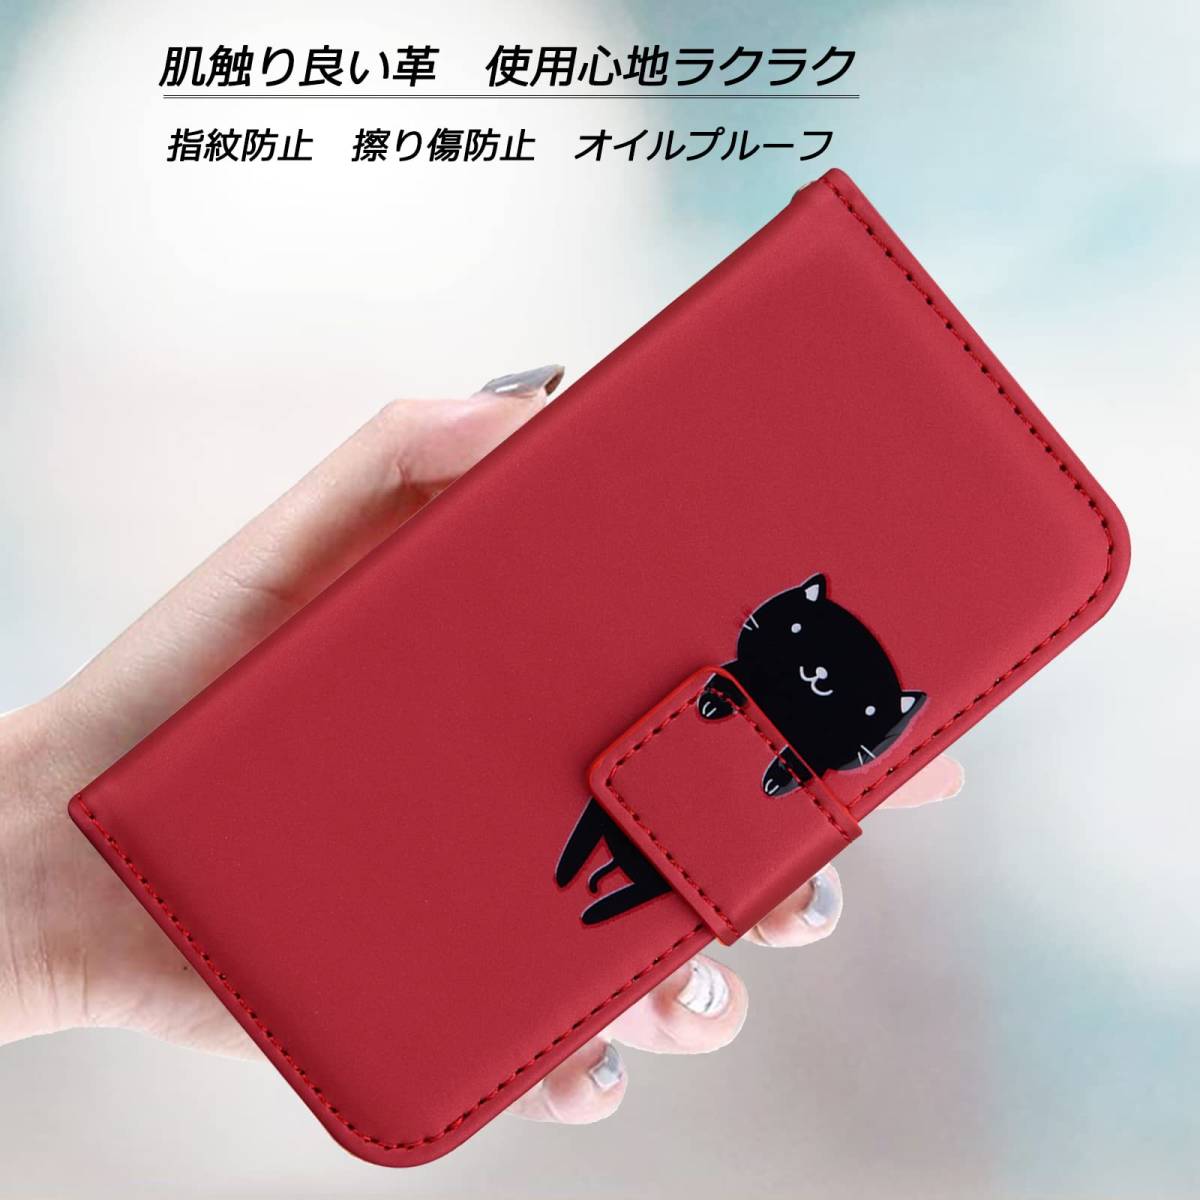 【 специальное предложение 】 красный  (iPhone  мужчина  женщина  ... для   модный    популярный   Note   модель    водонепроницаемый  ... модель   XR XR XR XR  животное   рукоятка     ... хороший  ... 6.